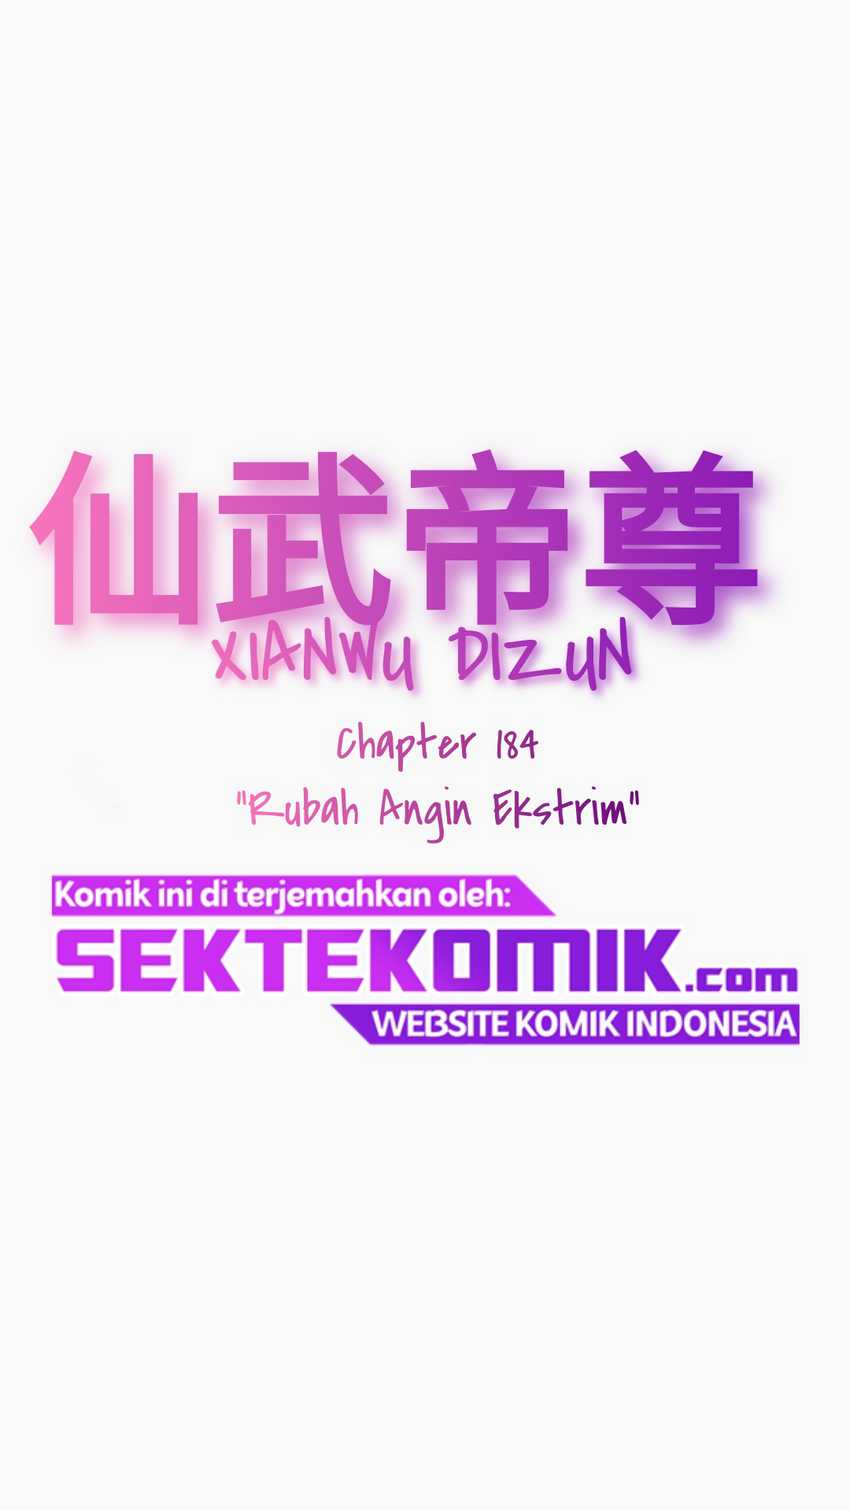 Xianwu Dizun Chapter 184